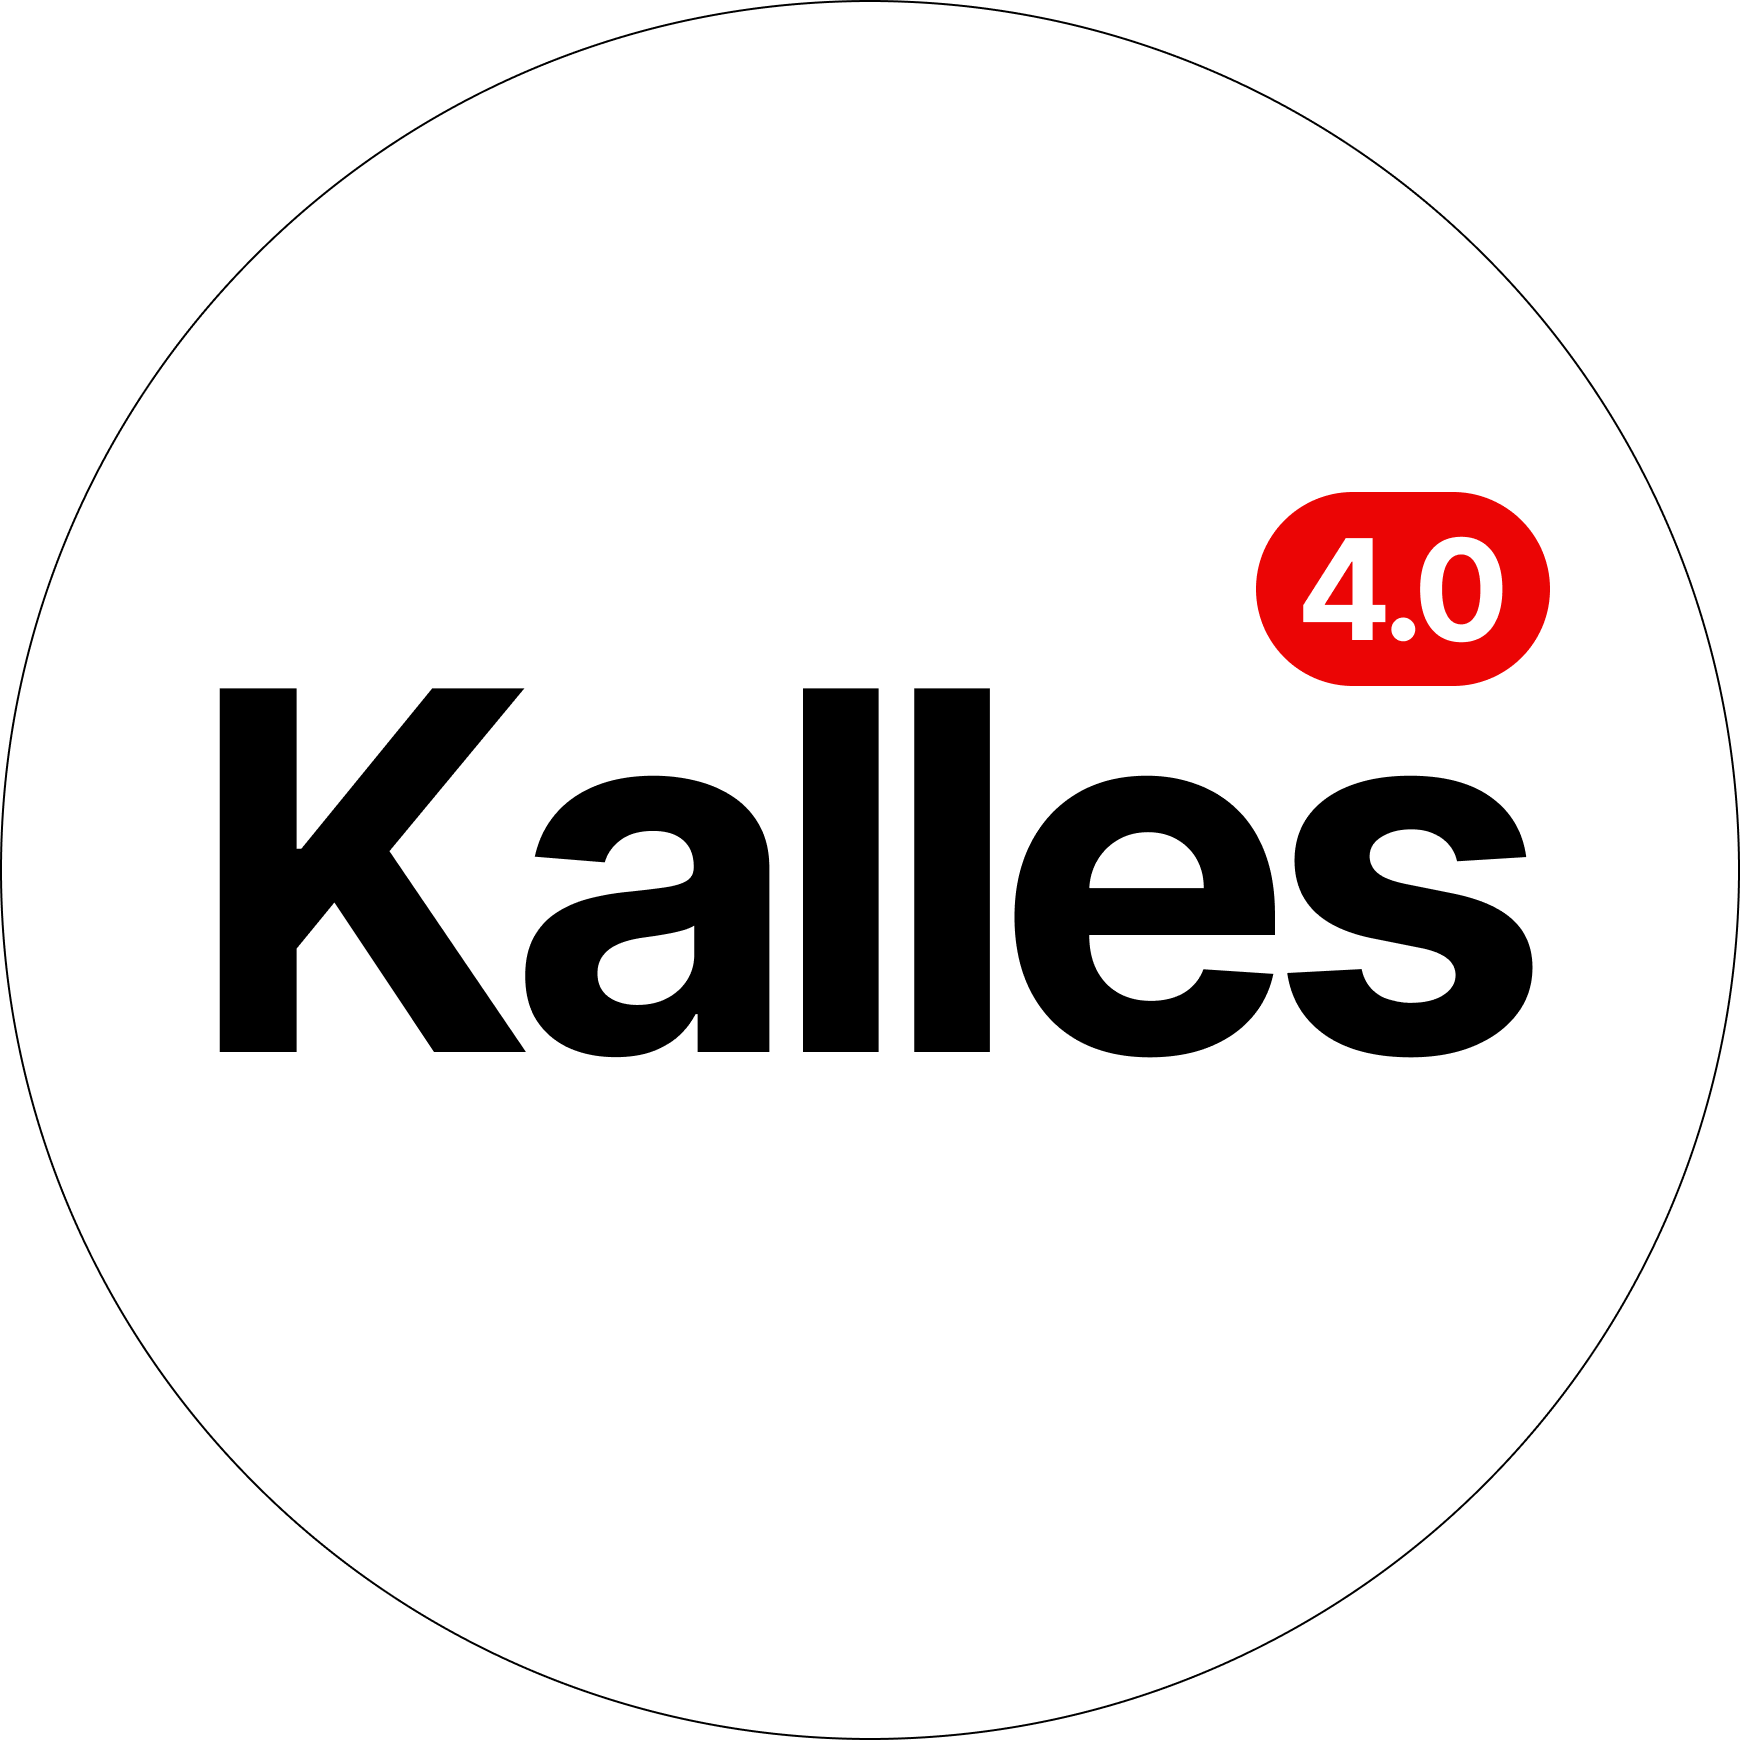 Kalles_logo-round